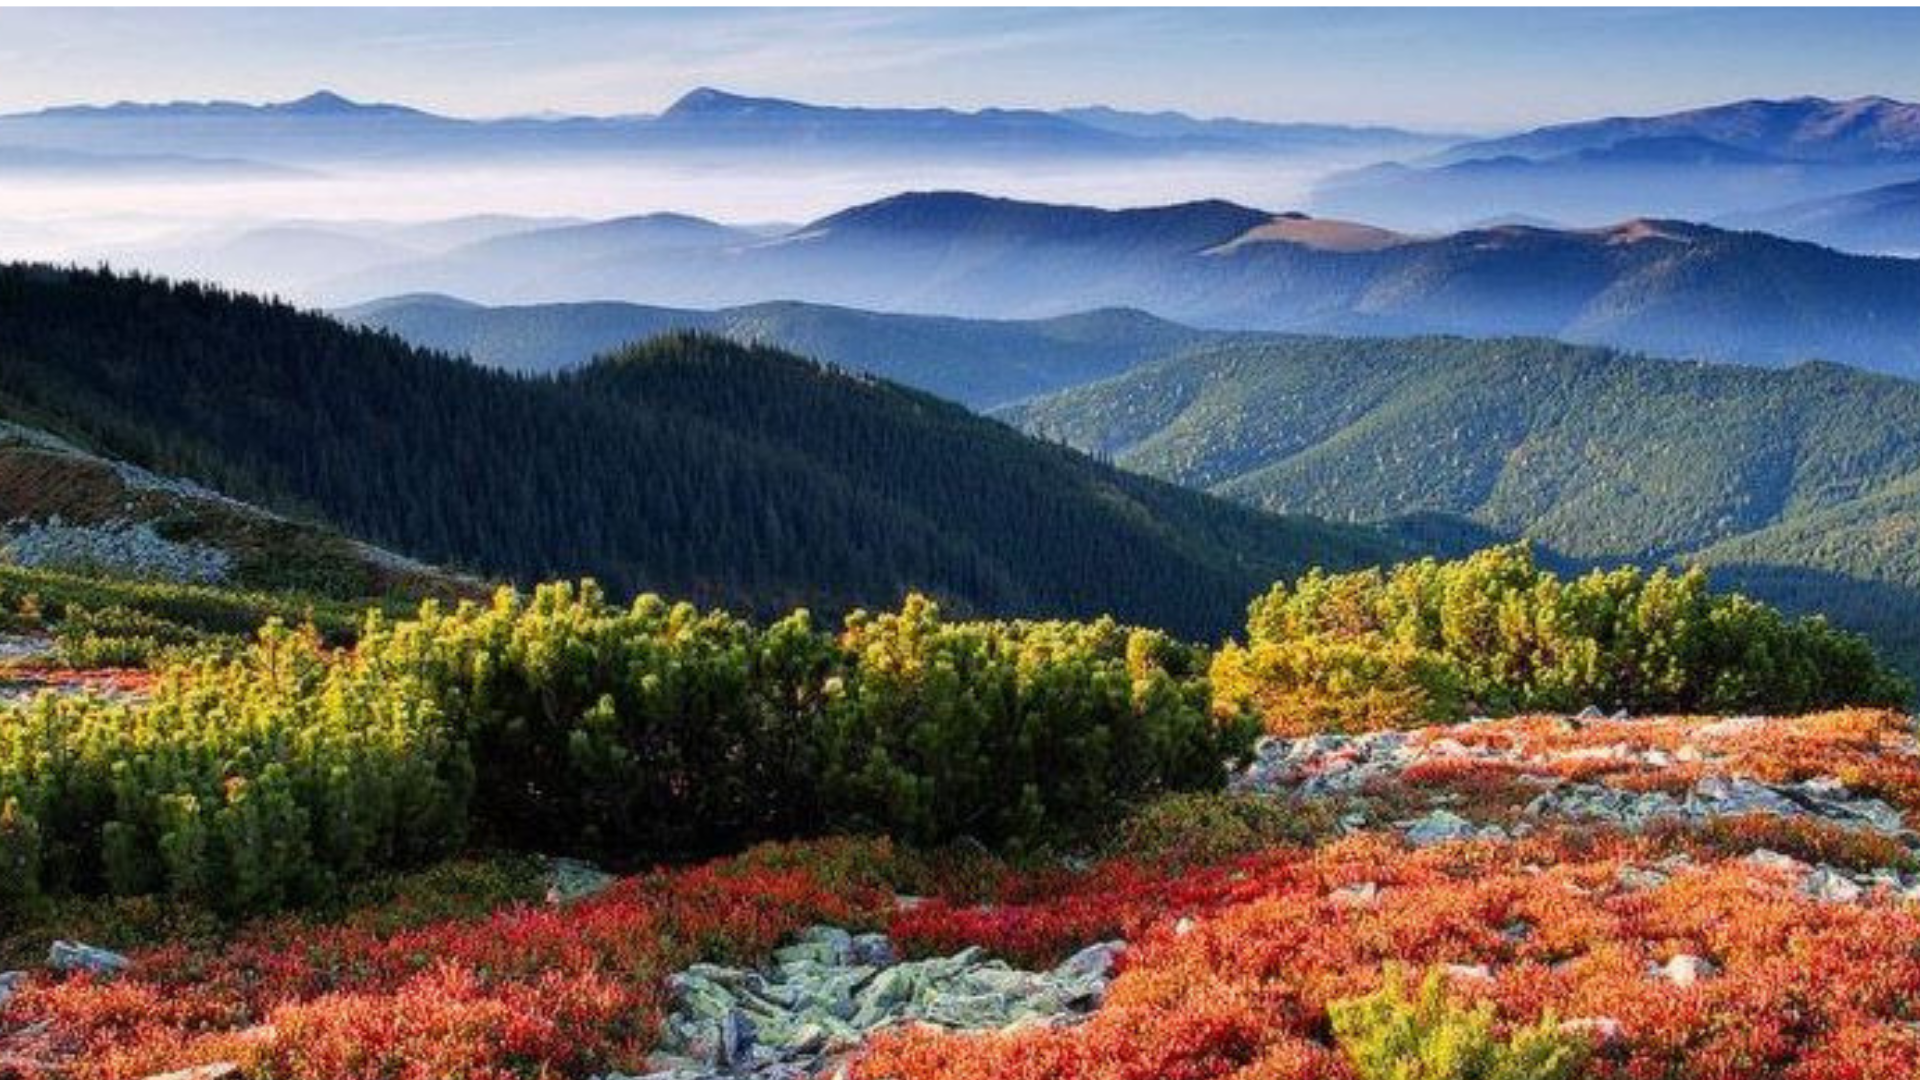 Де відпочити в Карпатах восени 2018: 5 цікавих маршрутів для любителів гір  